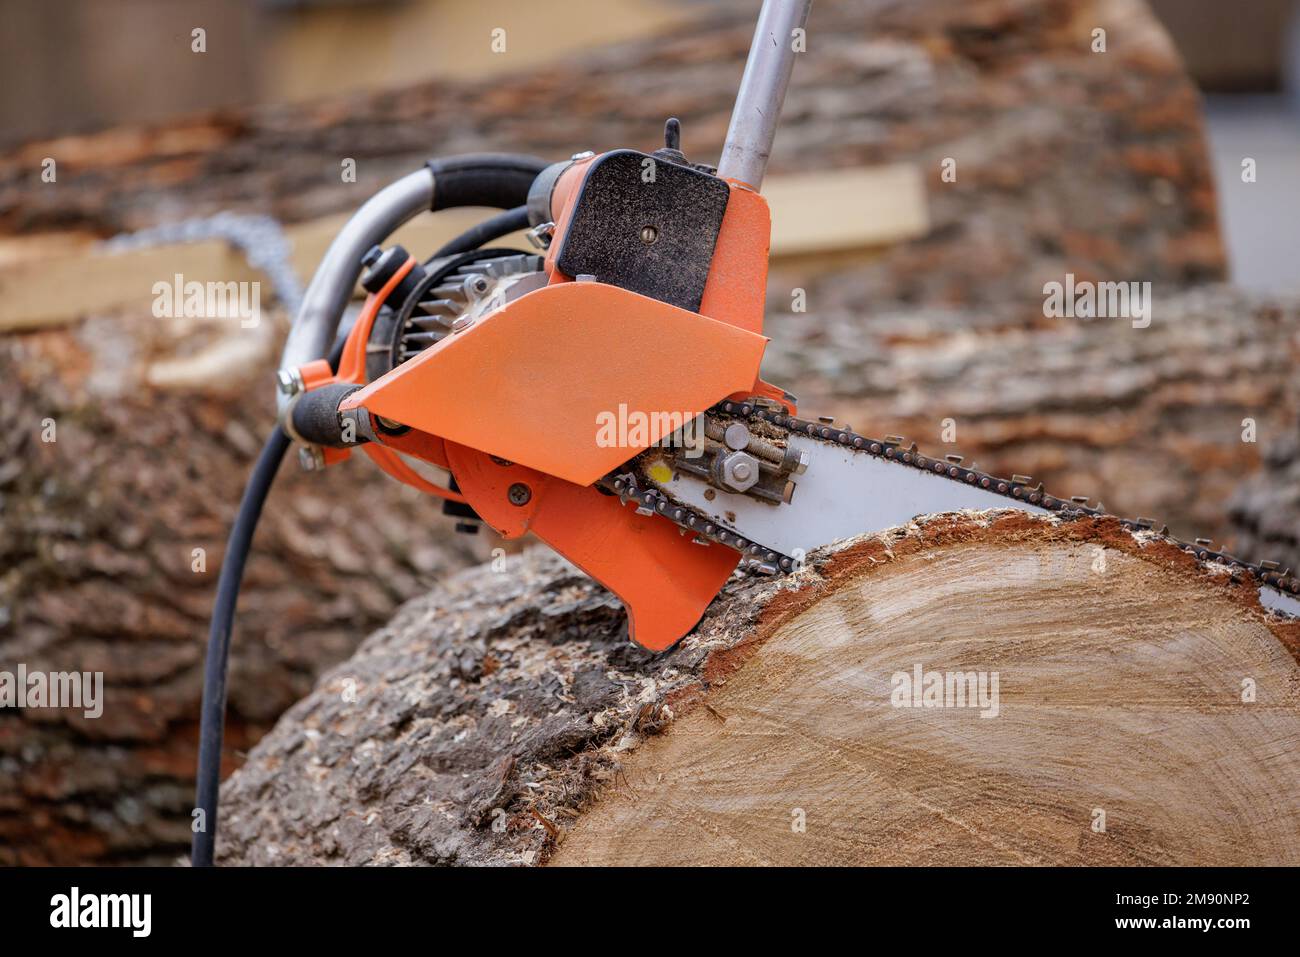 Holzschneider sägt Bäume mit einer elektrischen Kettensäge auf dem Sägewerk. Kettensäge für Aktivitäten wie das Fällen von Bäumen, das Schneiden von Feuerwehren in Tannen Stockfoto